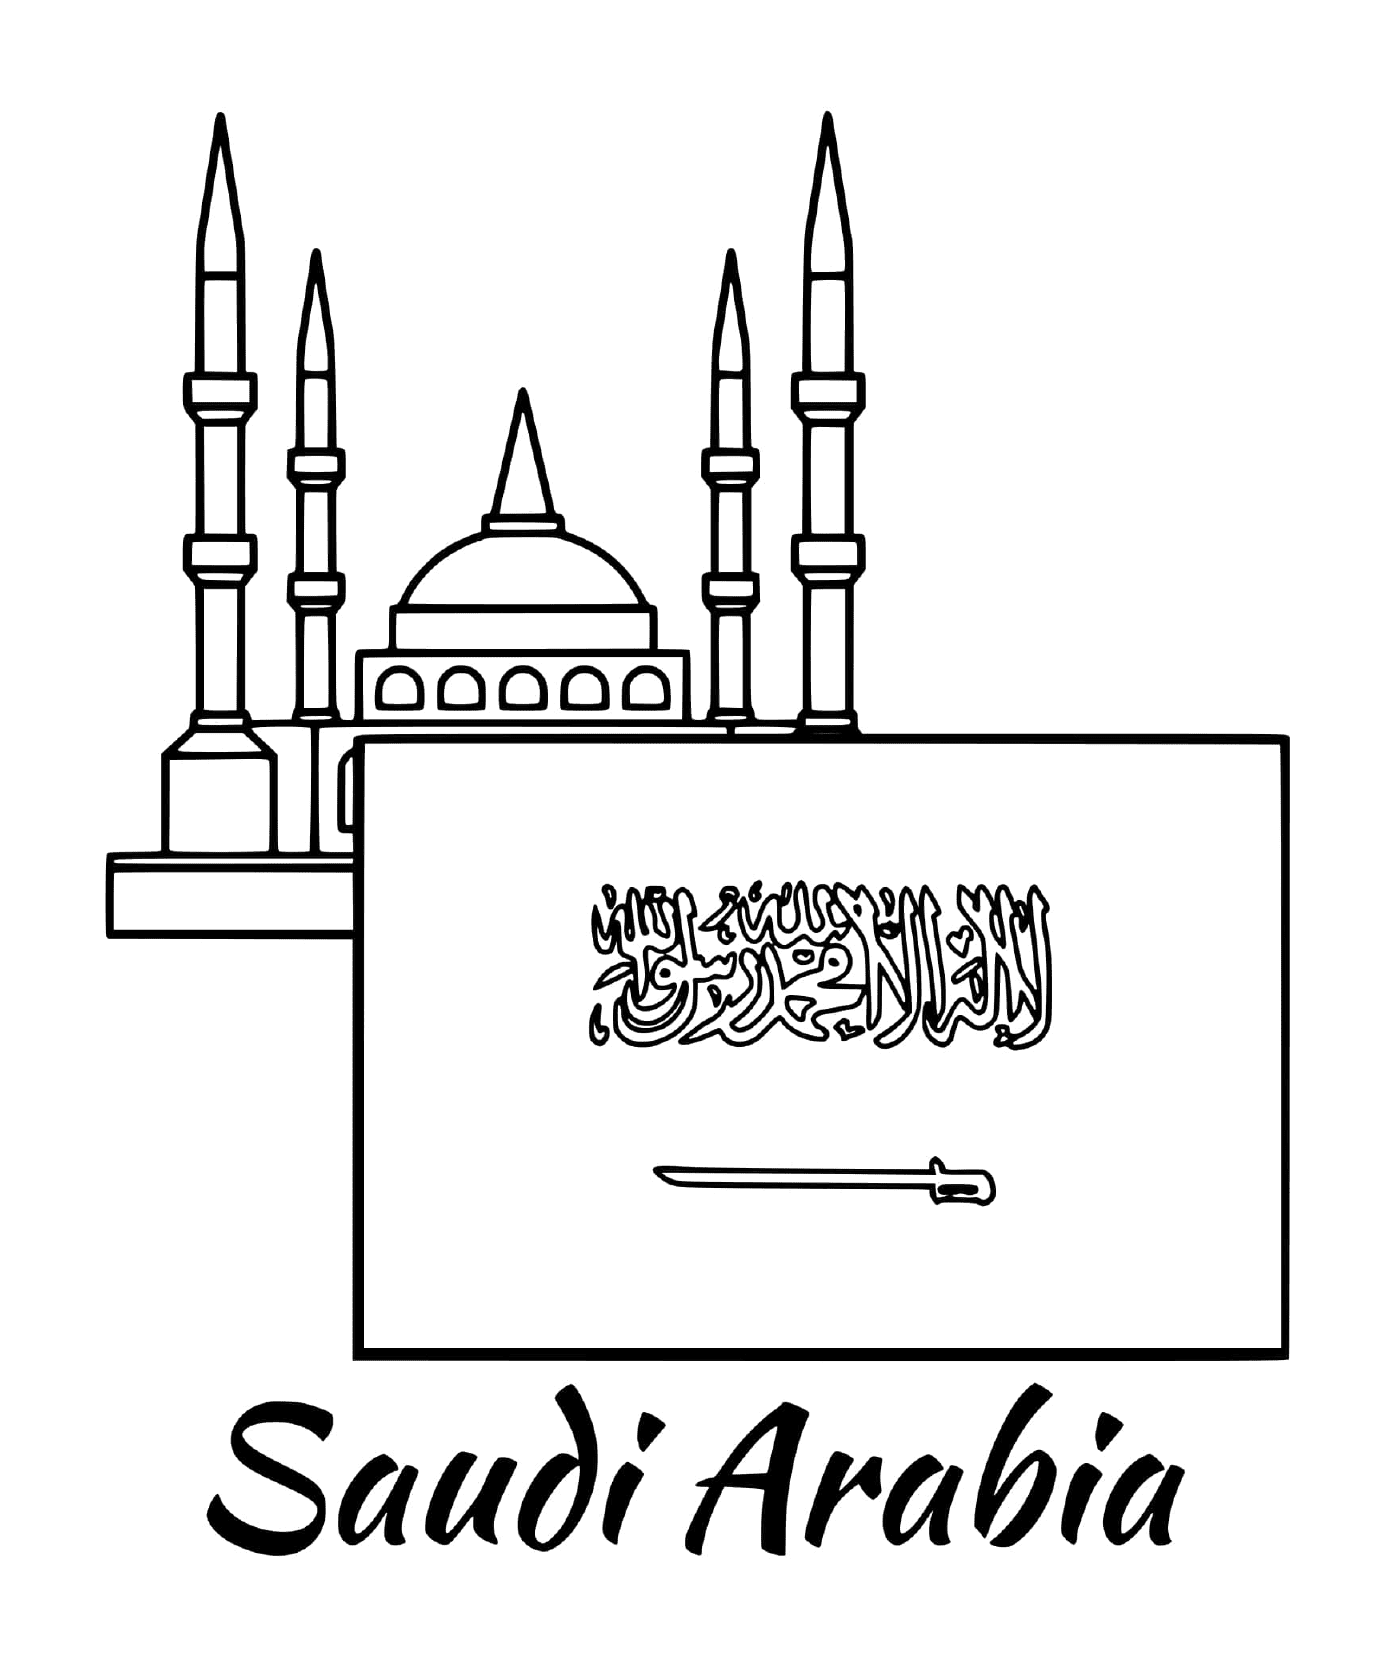  सऊदी अरब झंडा, जो कक्ष हैं 